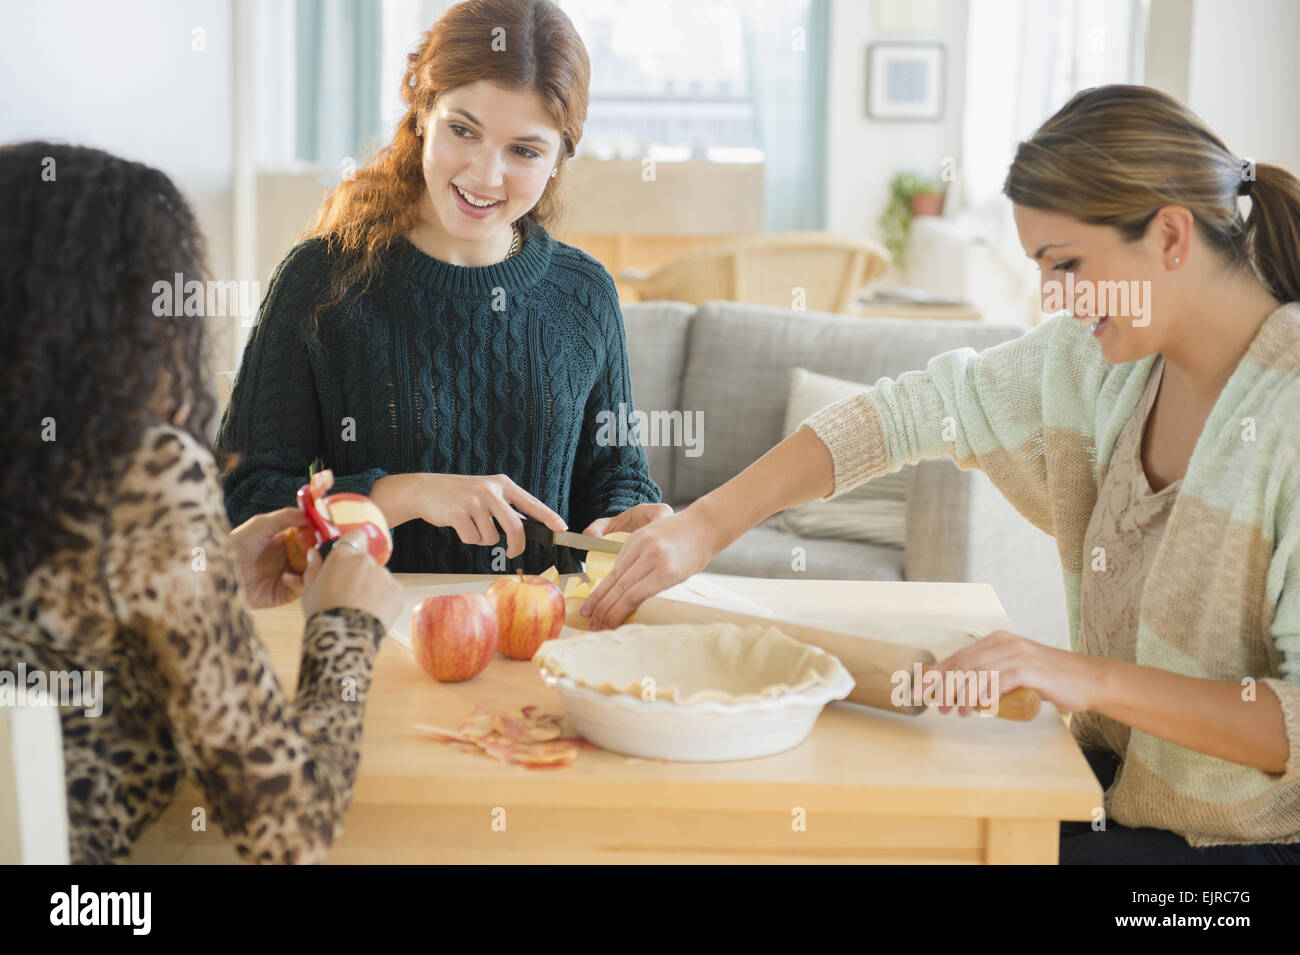 Women baking pie in kitchen Stock Photo